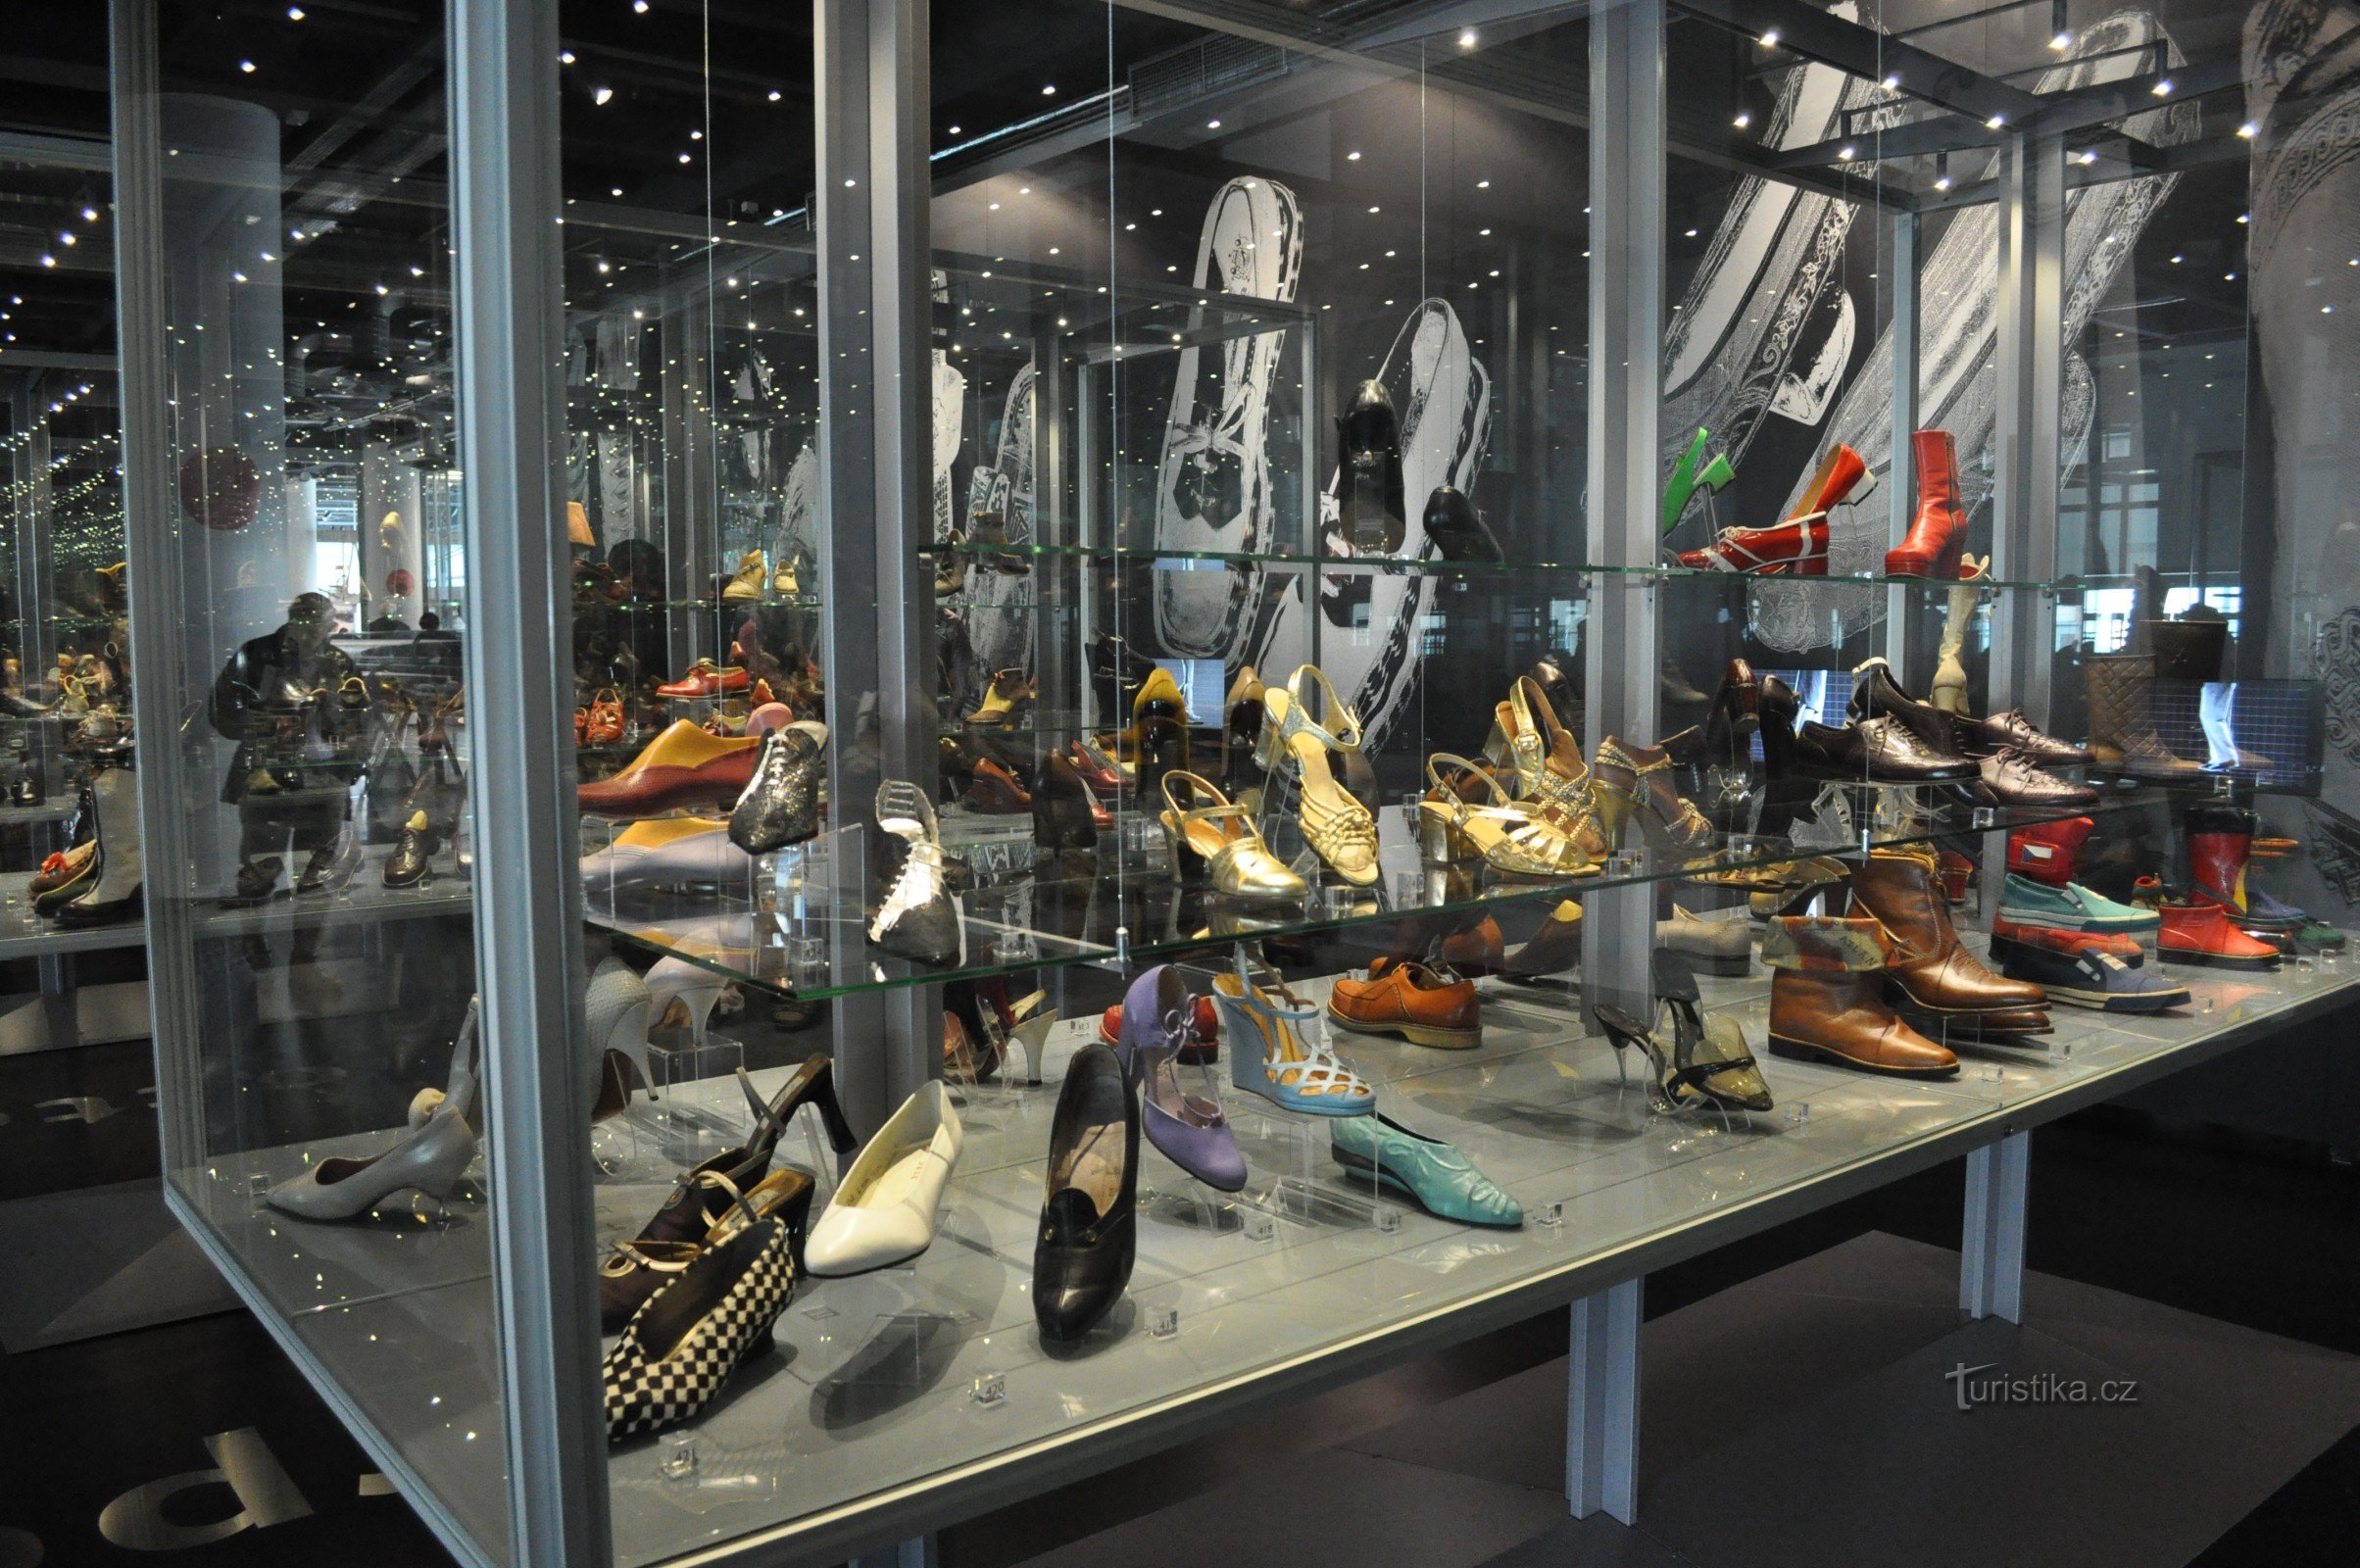 Exhibition of footwear